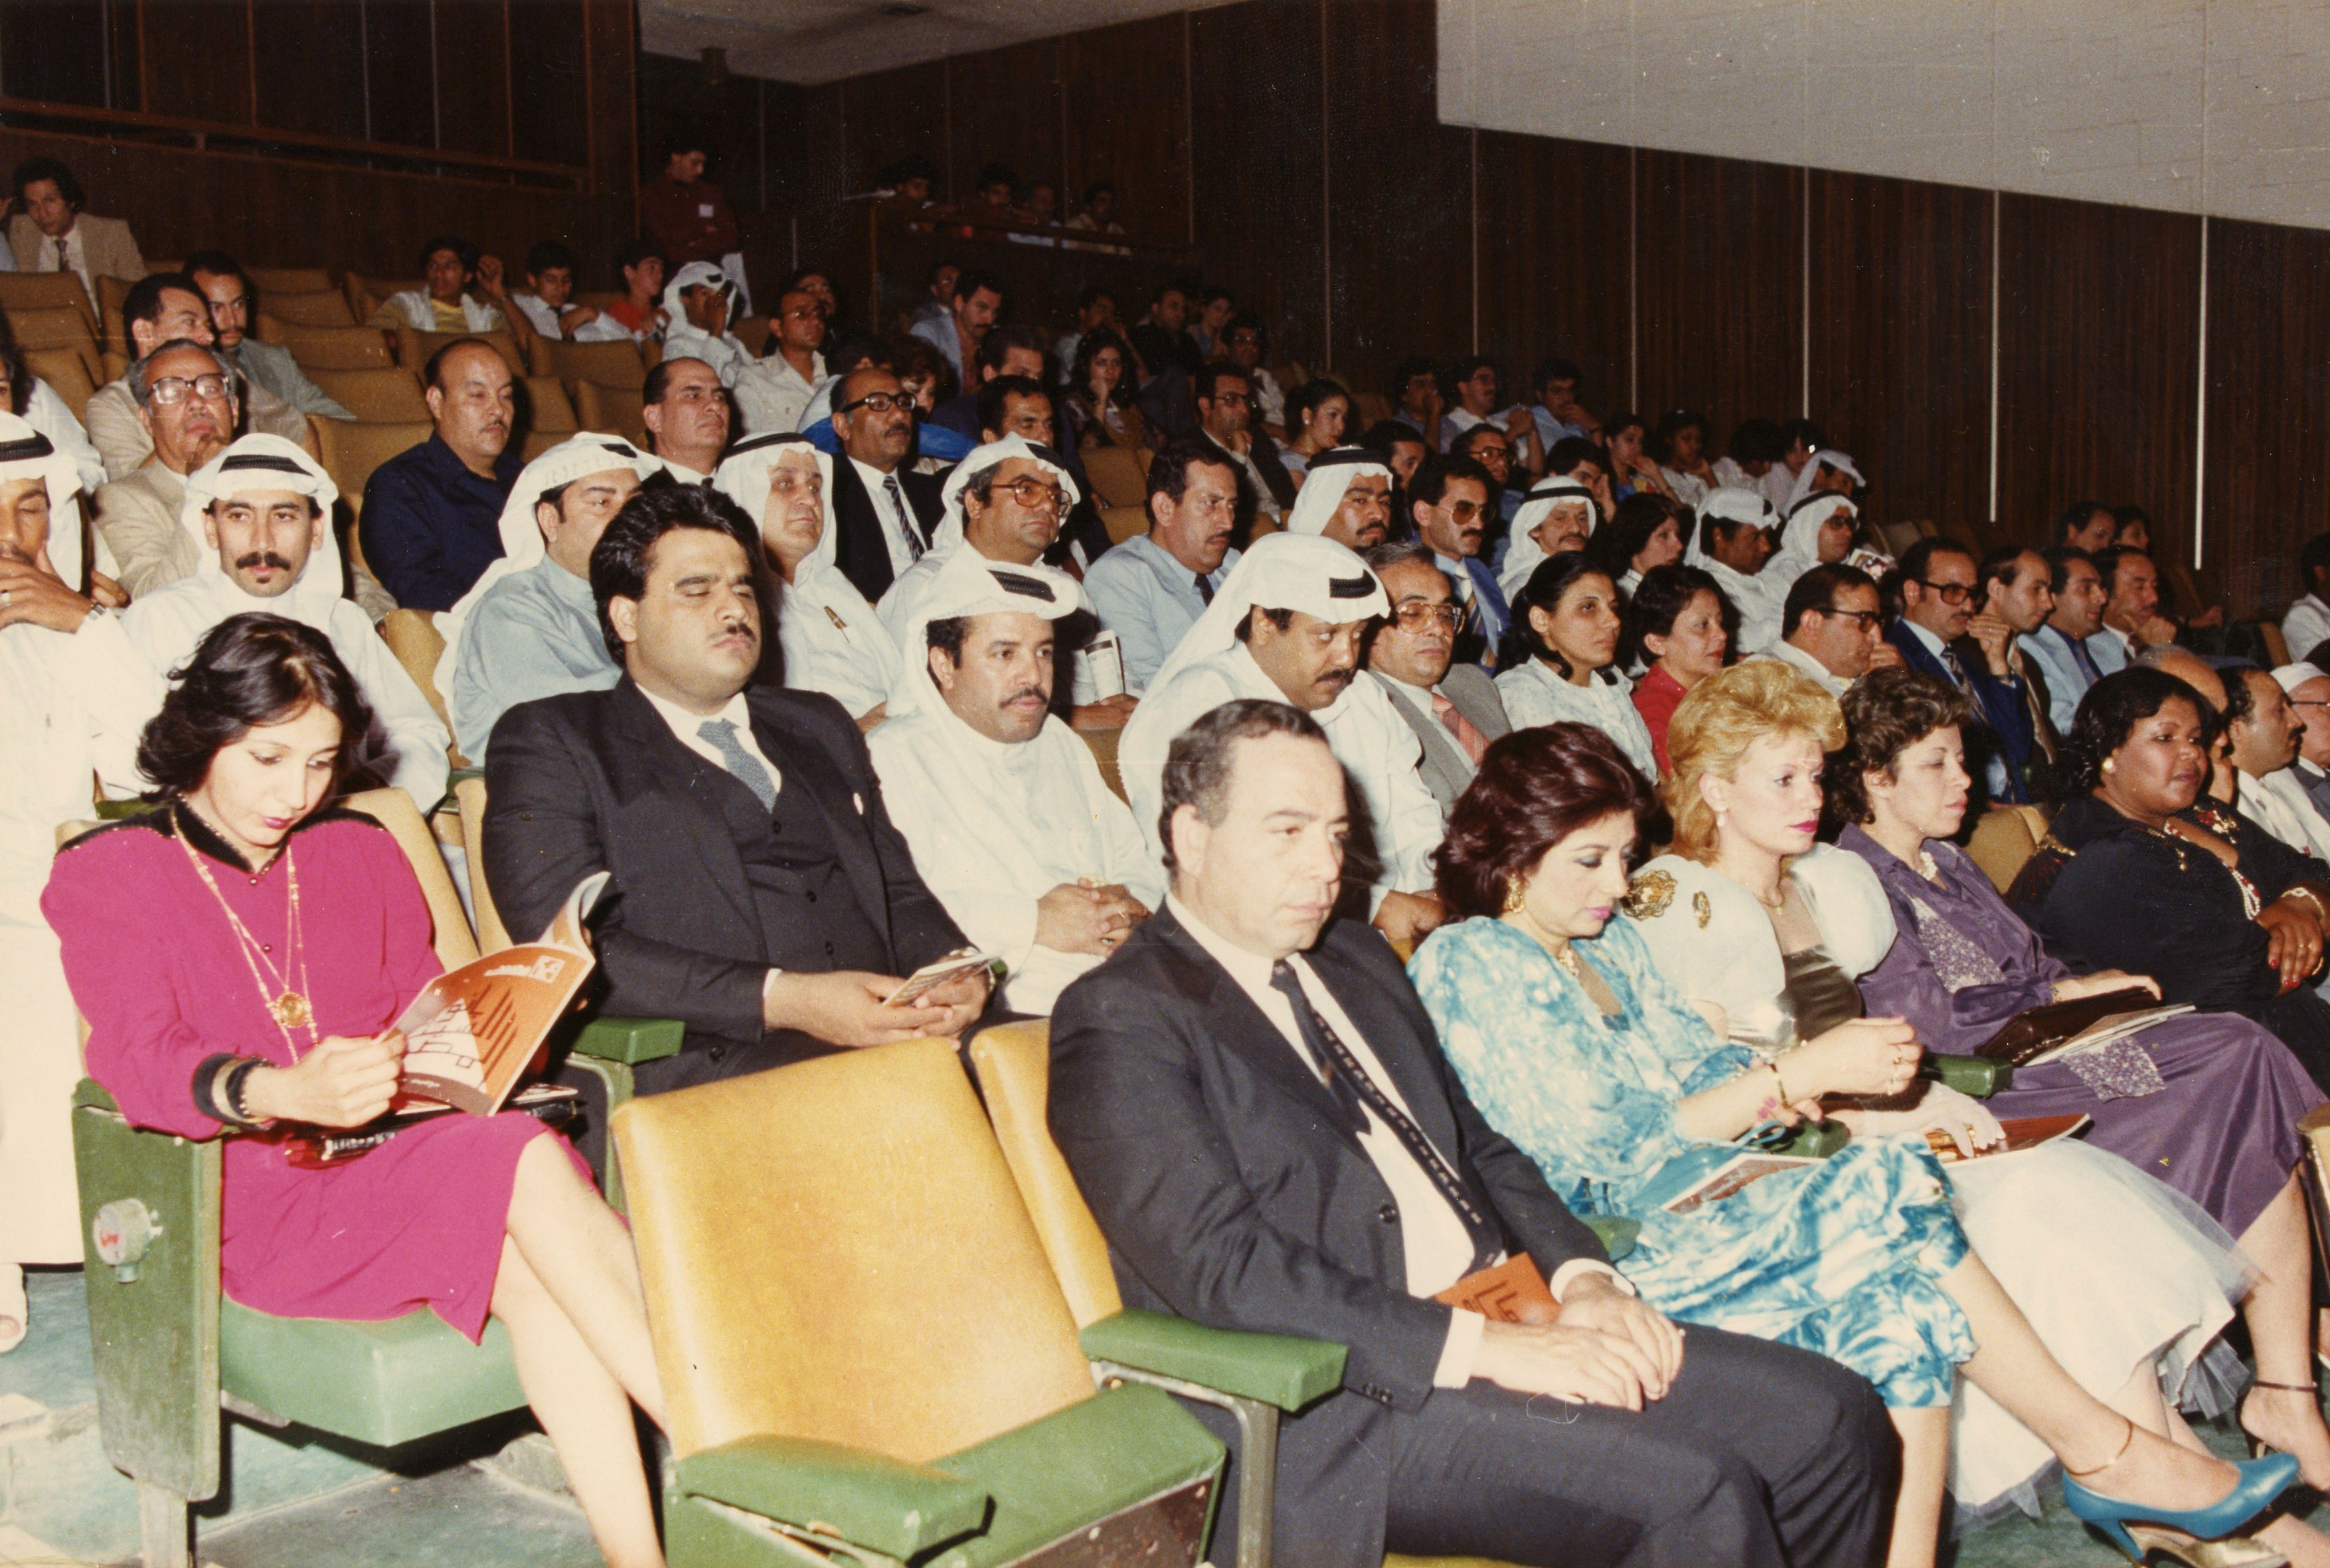 One event at Kuwait Cine Club around 1983